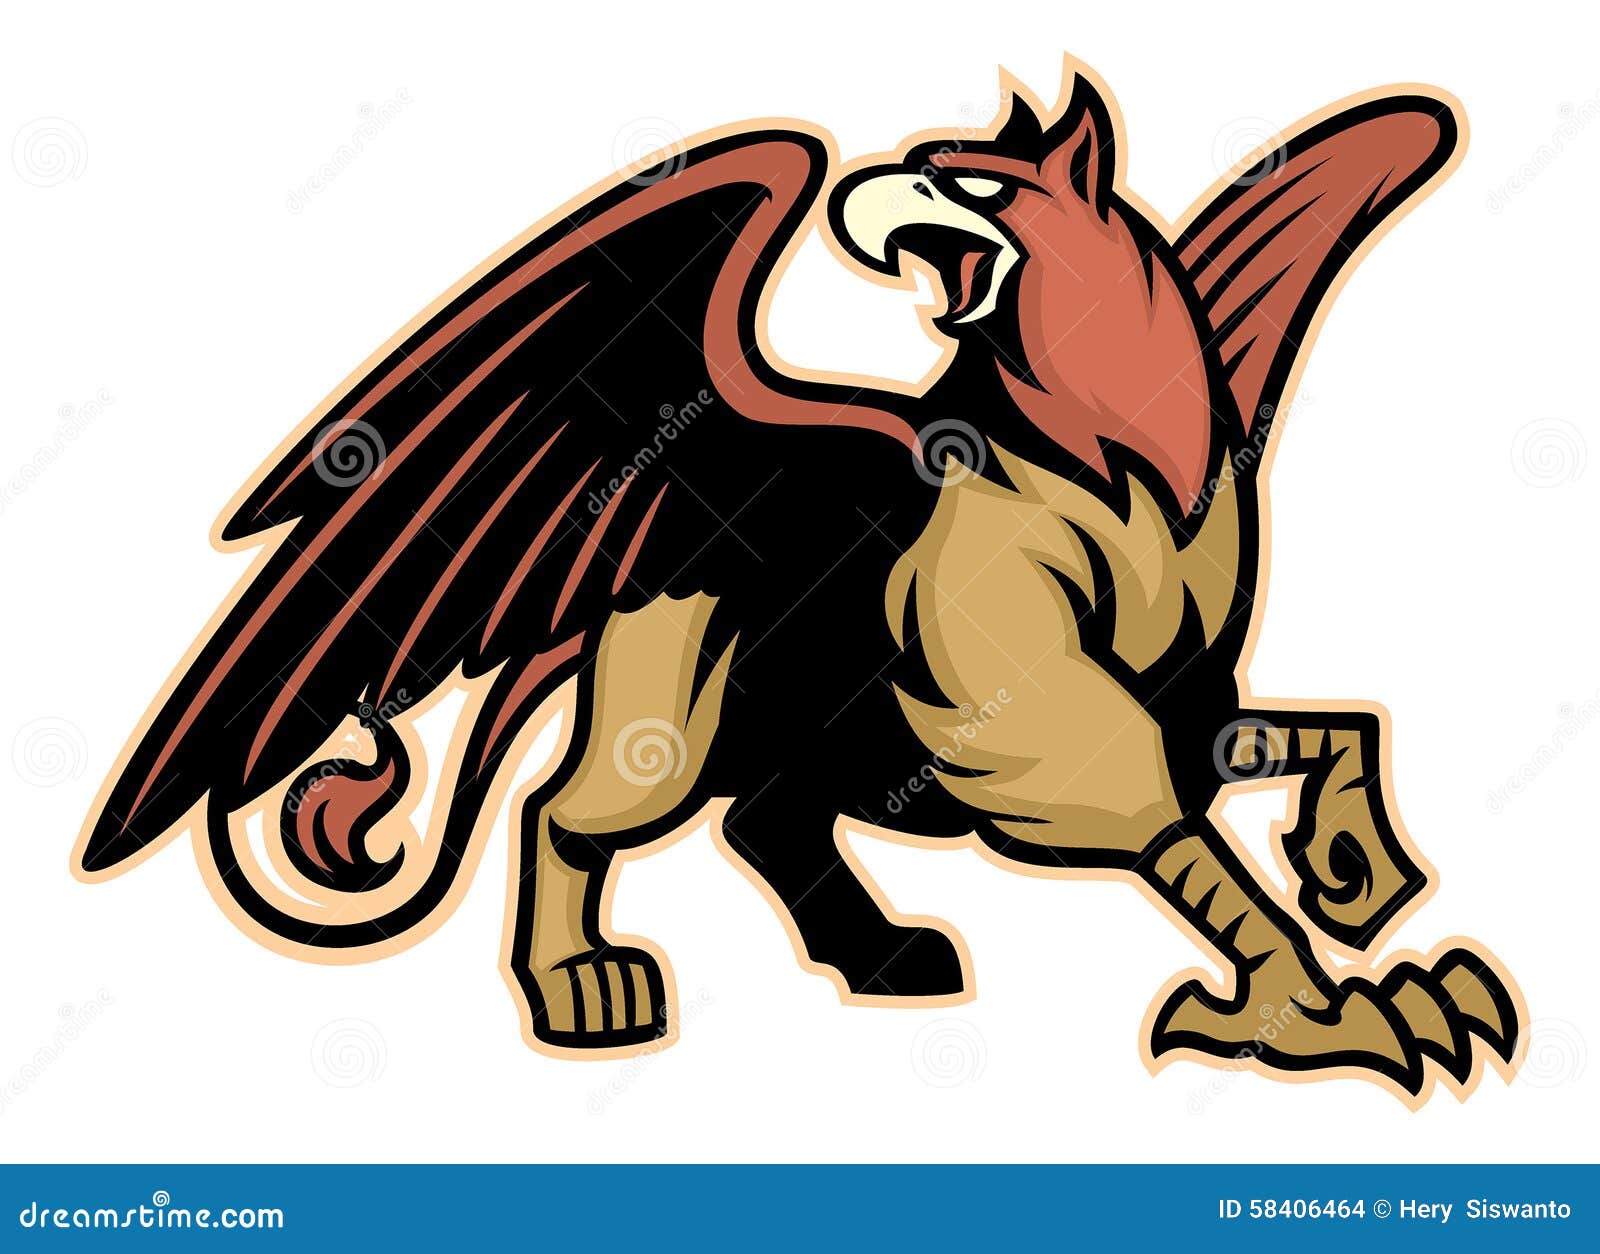 griffin mythology creature mascot